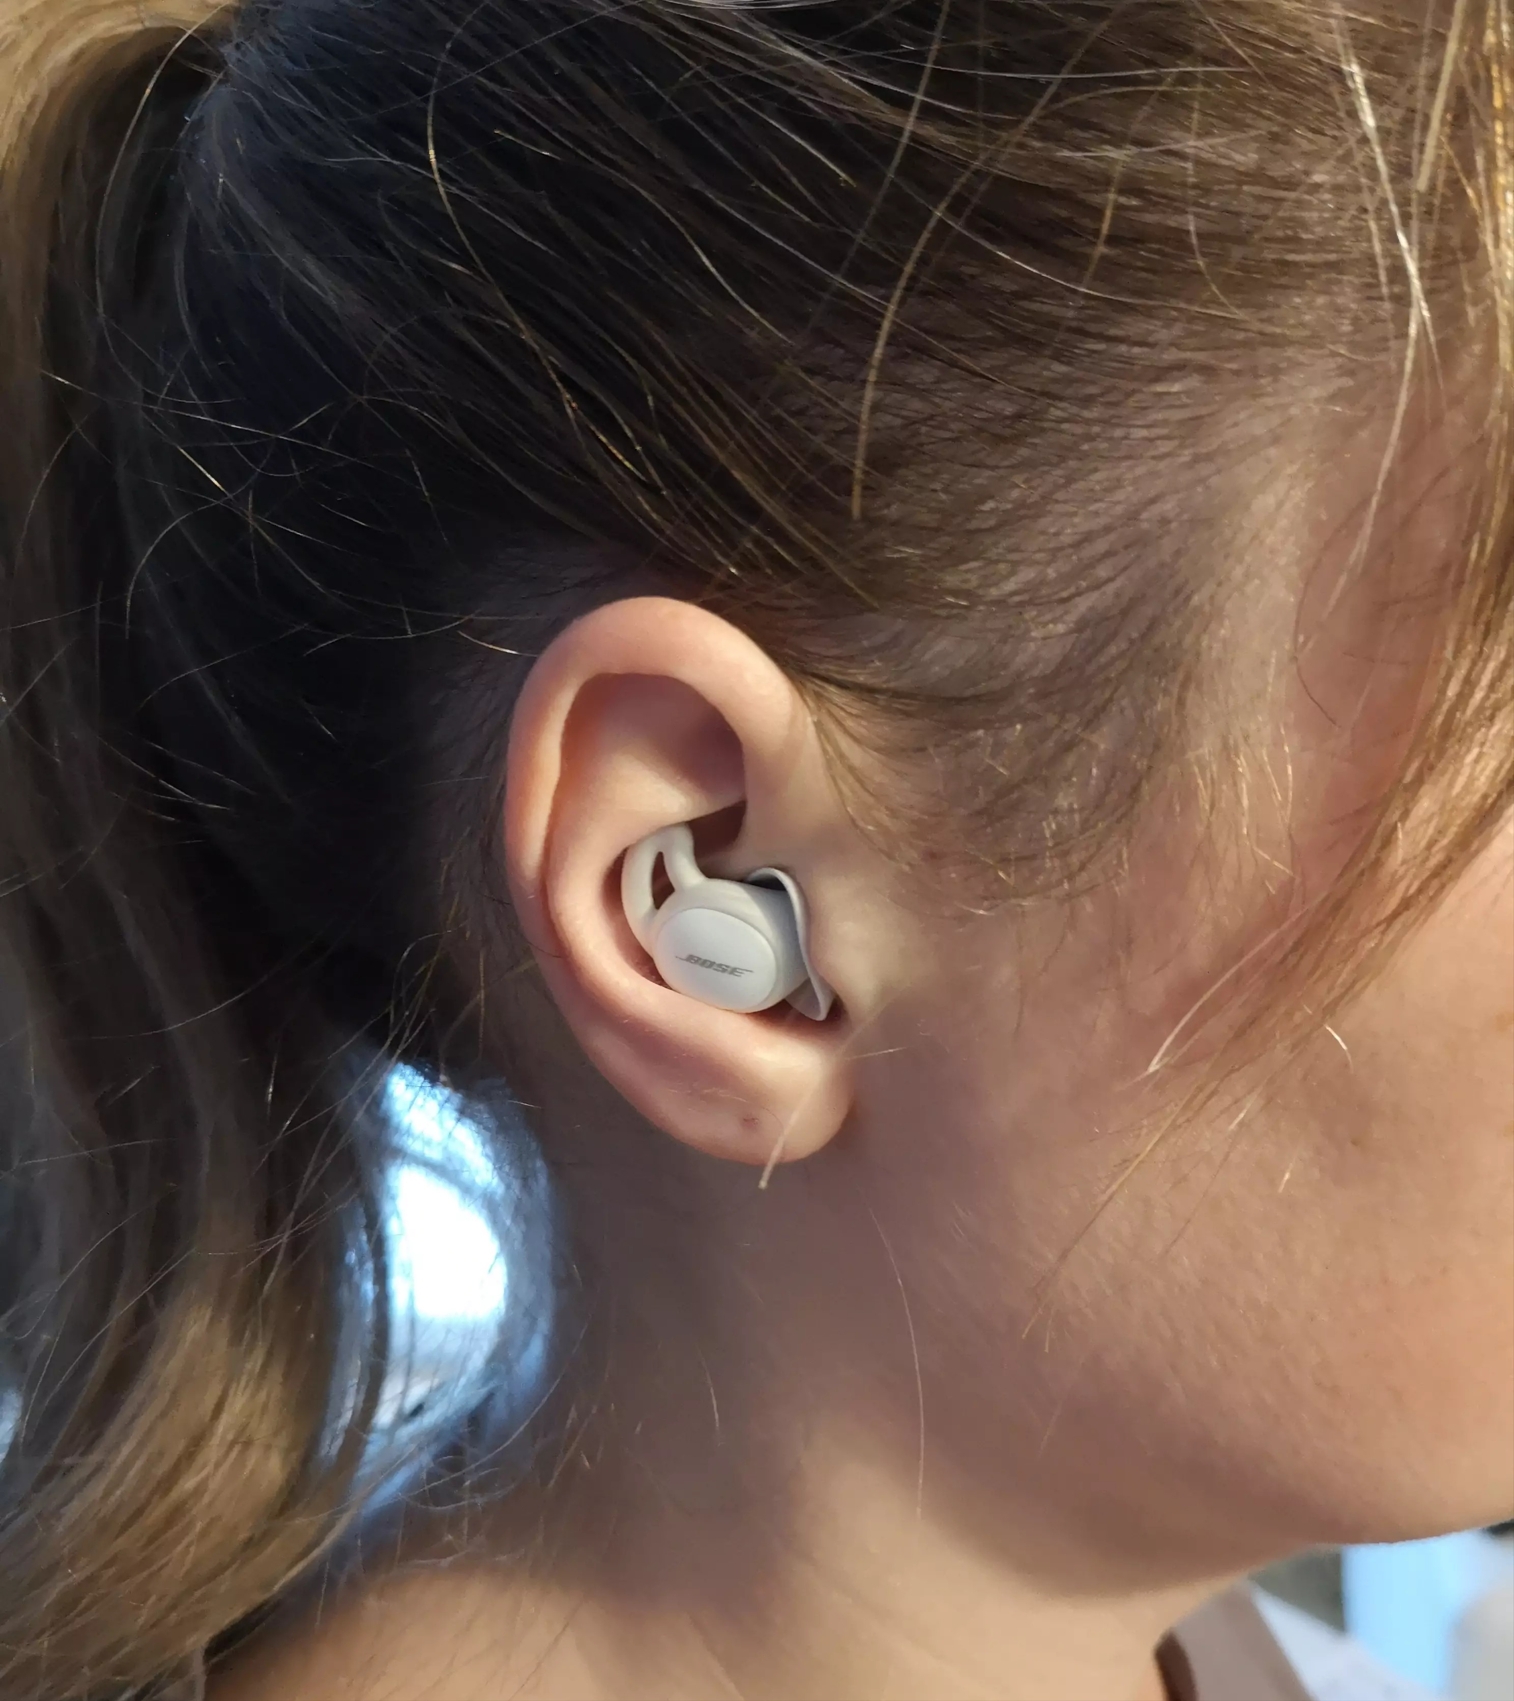 Bose retira del mercado sus auriculares para ayudar a dormir: los Sleepbuds  pasan a mejor vida